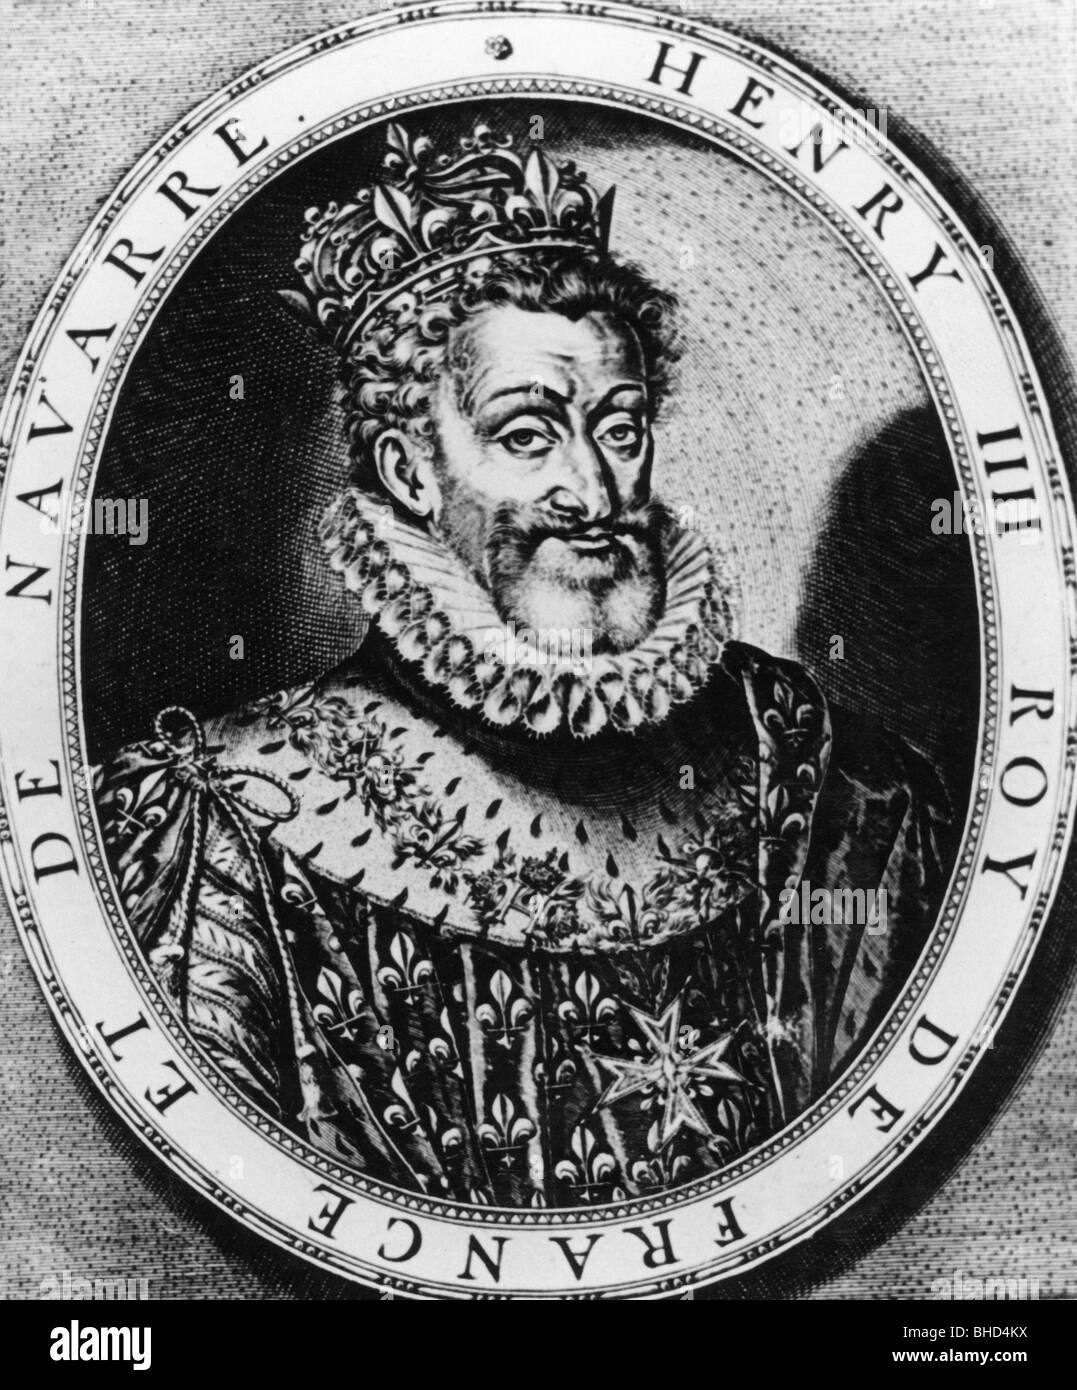 Enrico IV, 13.12.1553 - 14.5.1610, Re di Francia 27.2.1594 - 14.5.1610, ritratto, incisione su rame, circa 1600, , artista del diritto d'autore non deve essere cancellata Foto Stock